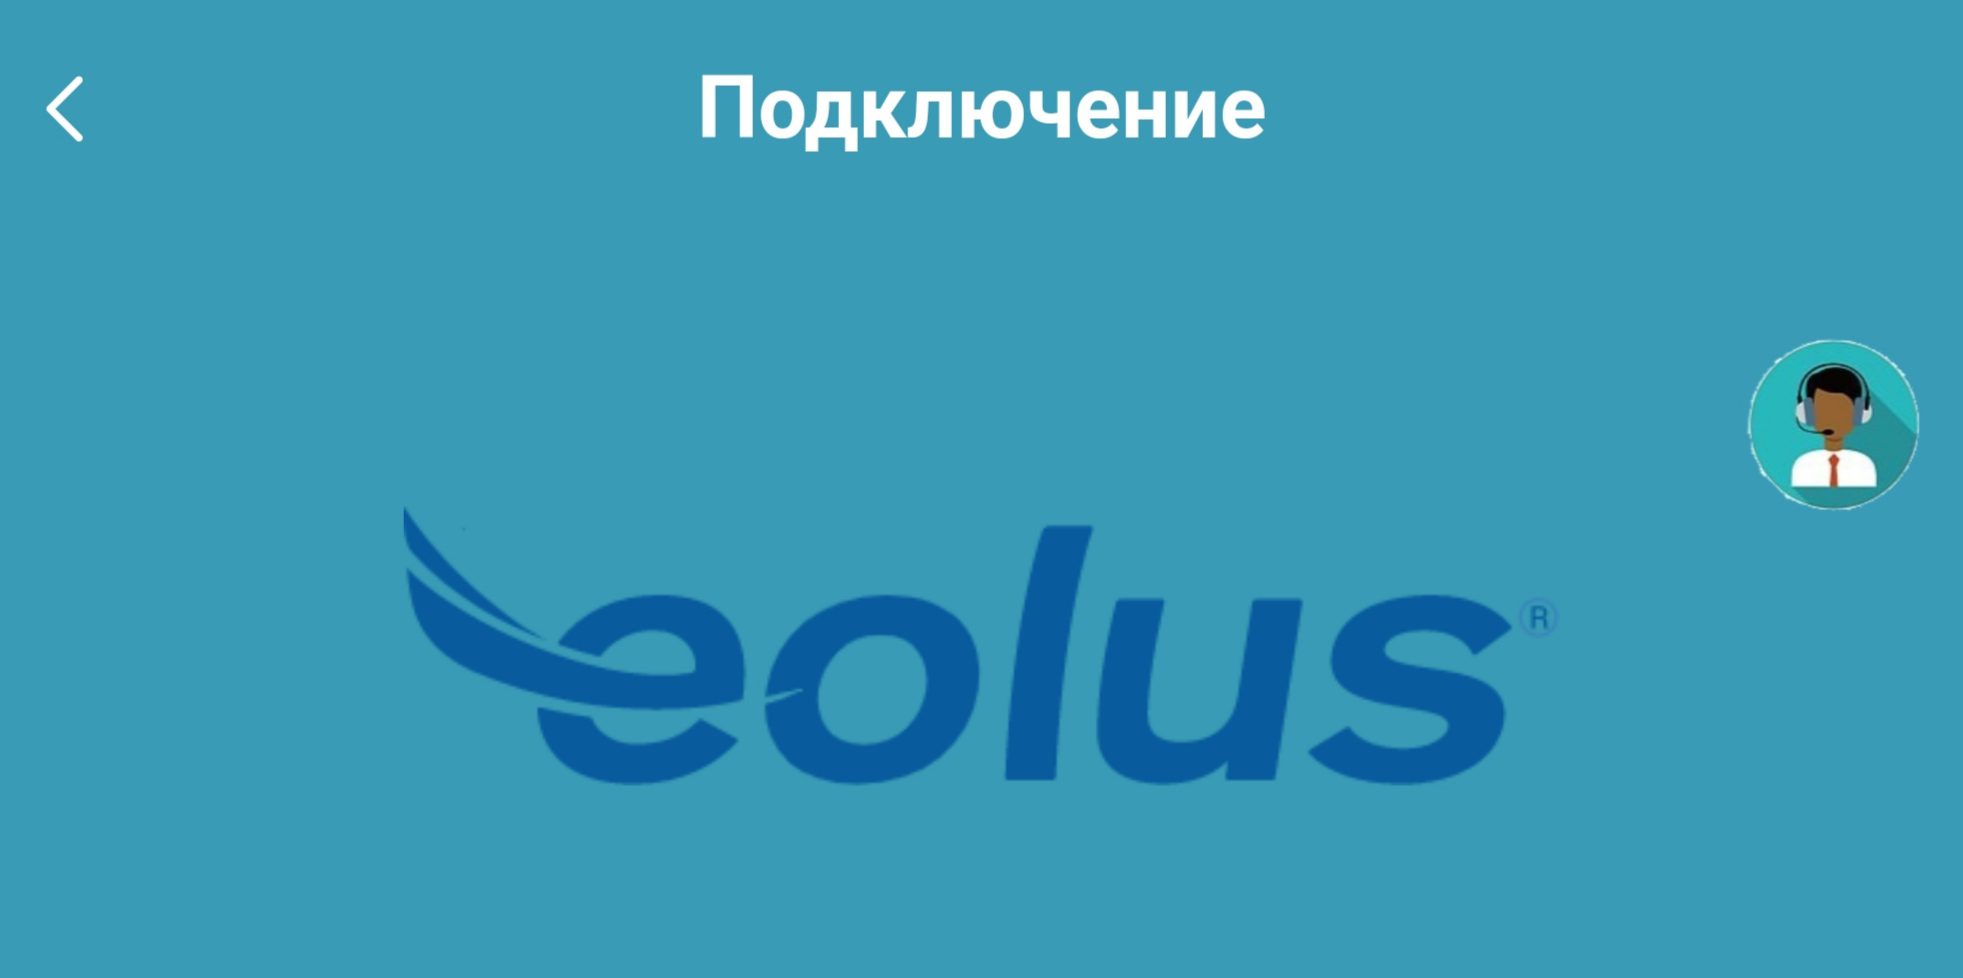 Eolus сайт